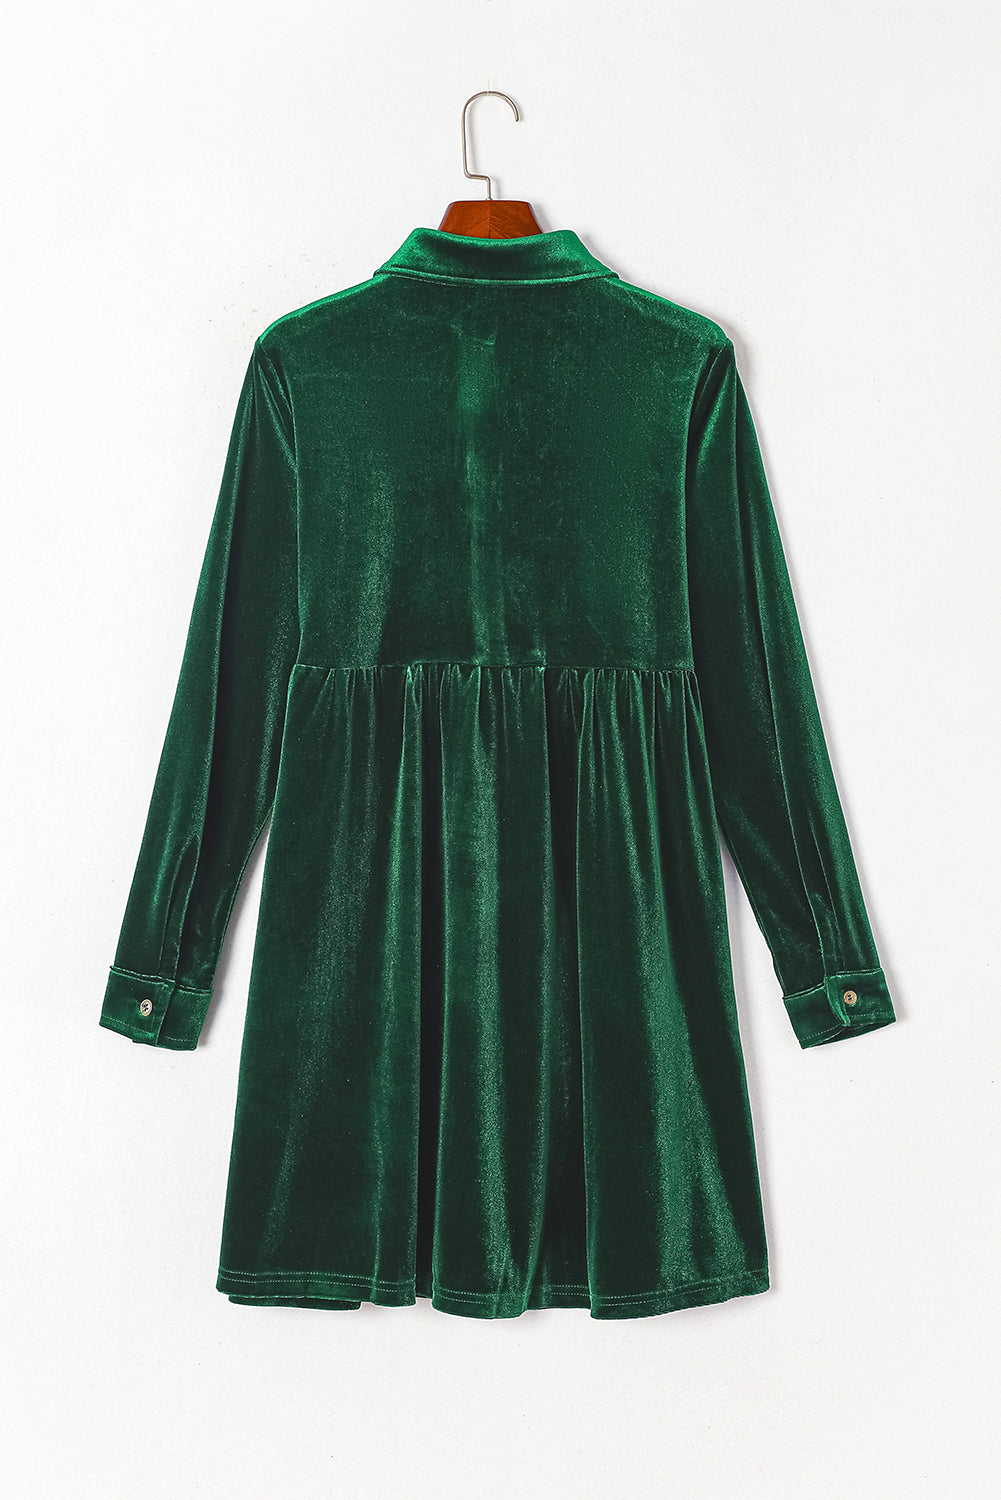 Grünes, langärmliges, geknöpftes Kleid aus Samt mit Rüschen